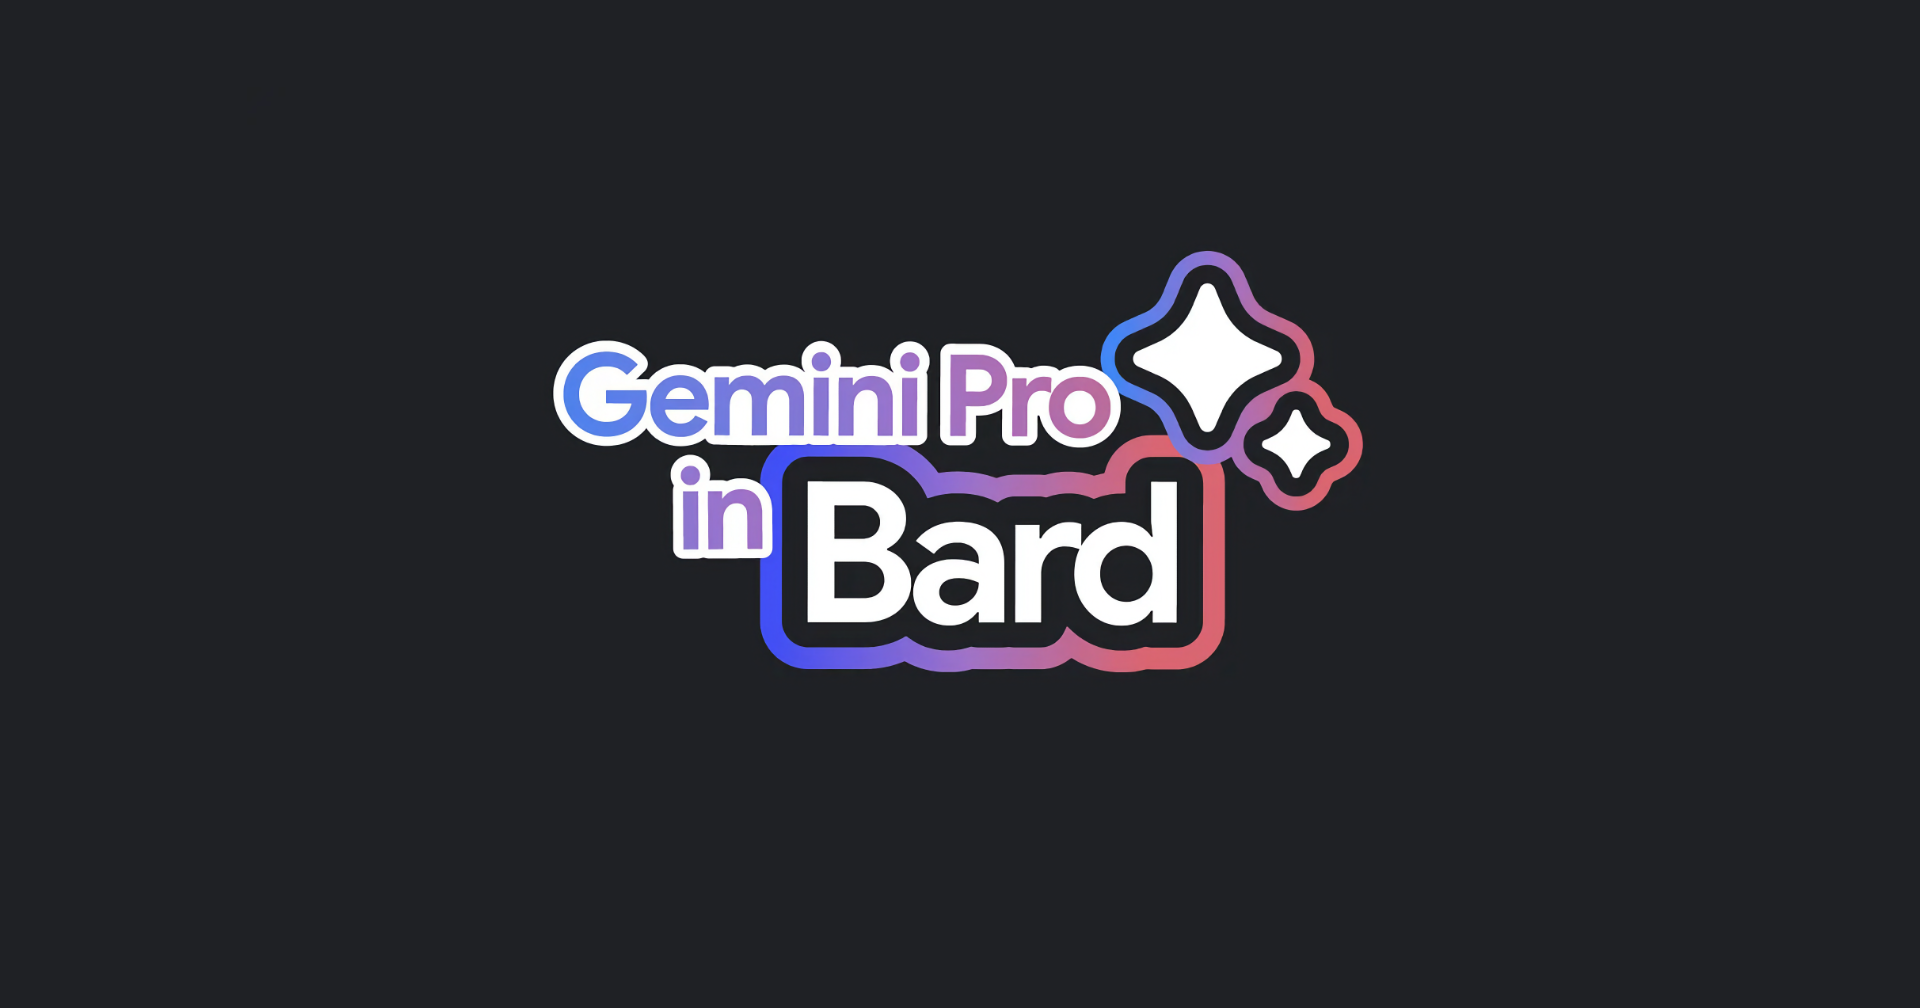 Gemini Pro พร้อมใช้งานแล้วบน Bard รองรับทั้งภาษาไทย และสร้างรูปภาพได้ฟรี